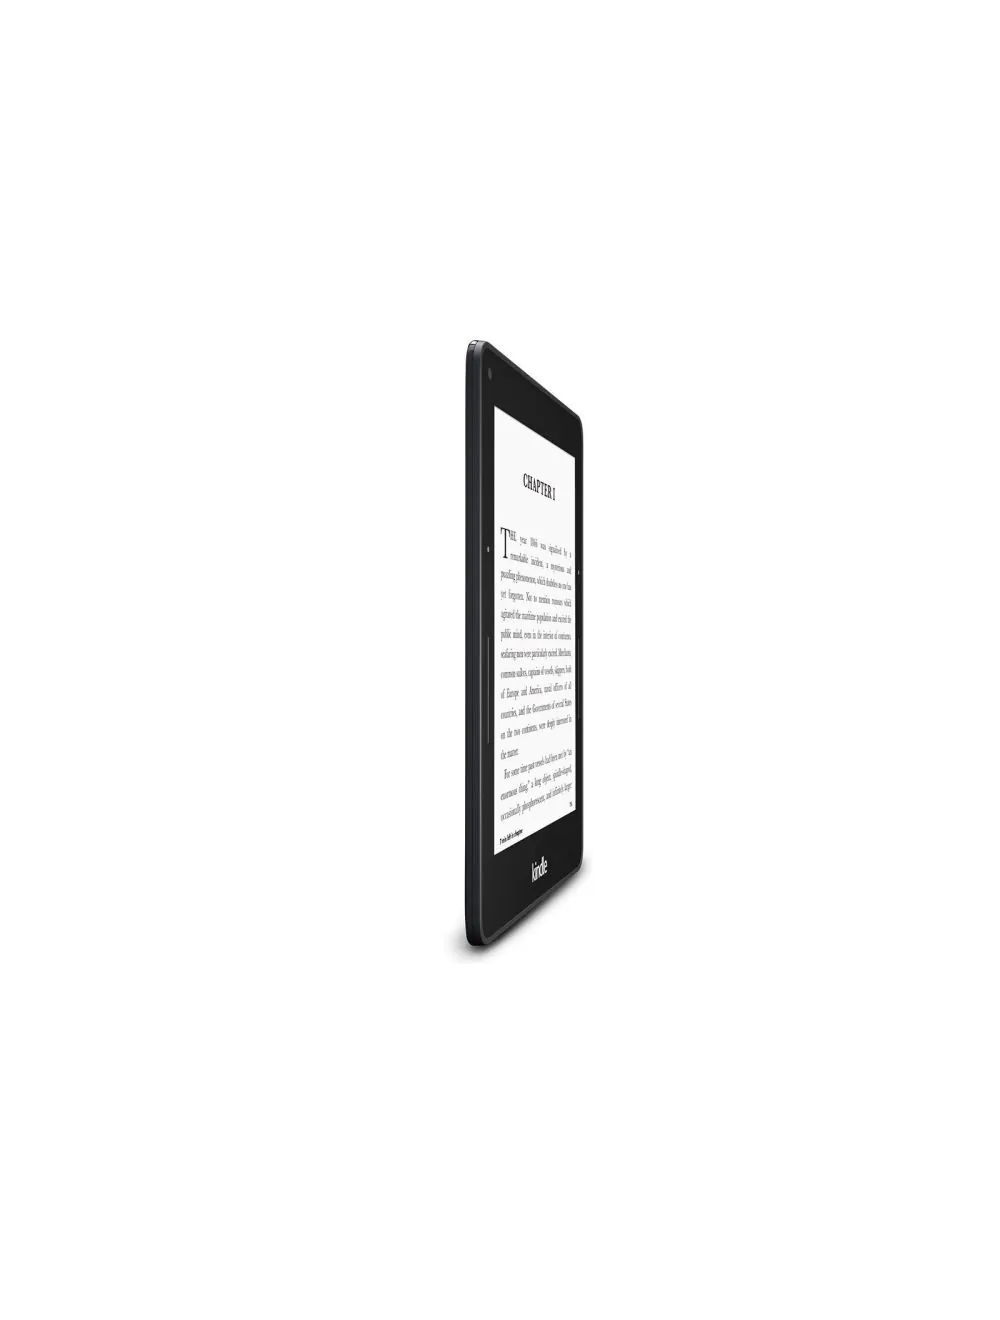 Kindle Voyage 3G E-reader: Được thiết kế đặc biệt với màn hình cao cấp, Kindle Voyage 3G E-reader là sự lựa chọn tuyệt vời cho những người yêu sách. Với khả năng kết nối Internet dễ dàng, bạn có thể truy cập vào kho tàng sách điện tử đầy đủ và đa dạng. Hãy cùng khám phá những truyện hay và kiến thức mới trên thiết bị này.